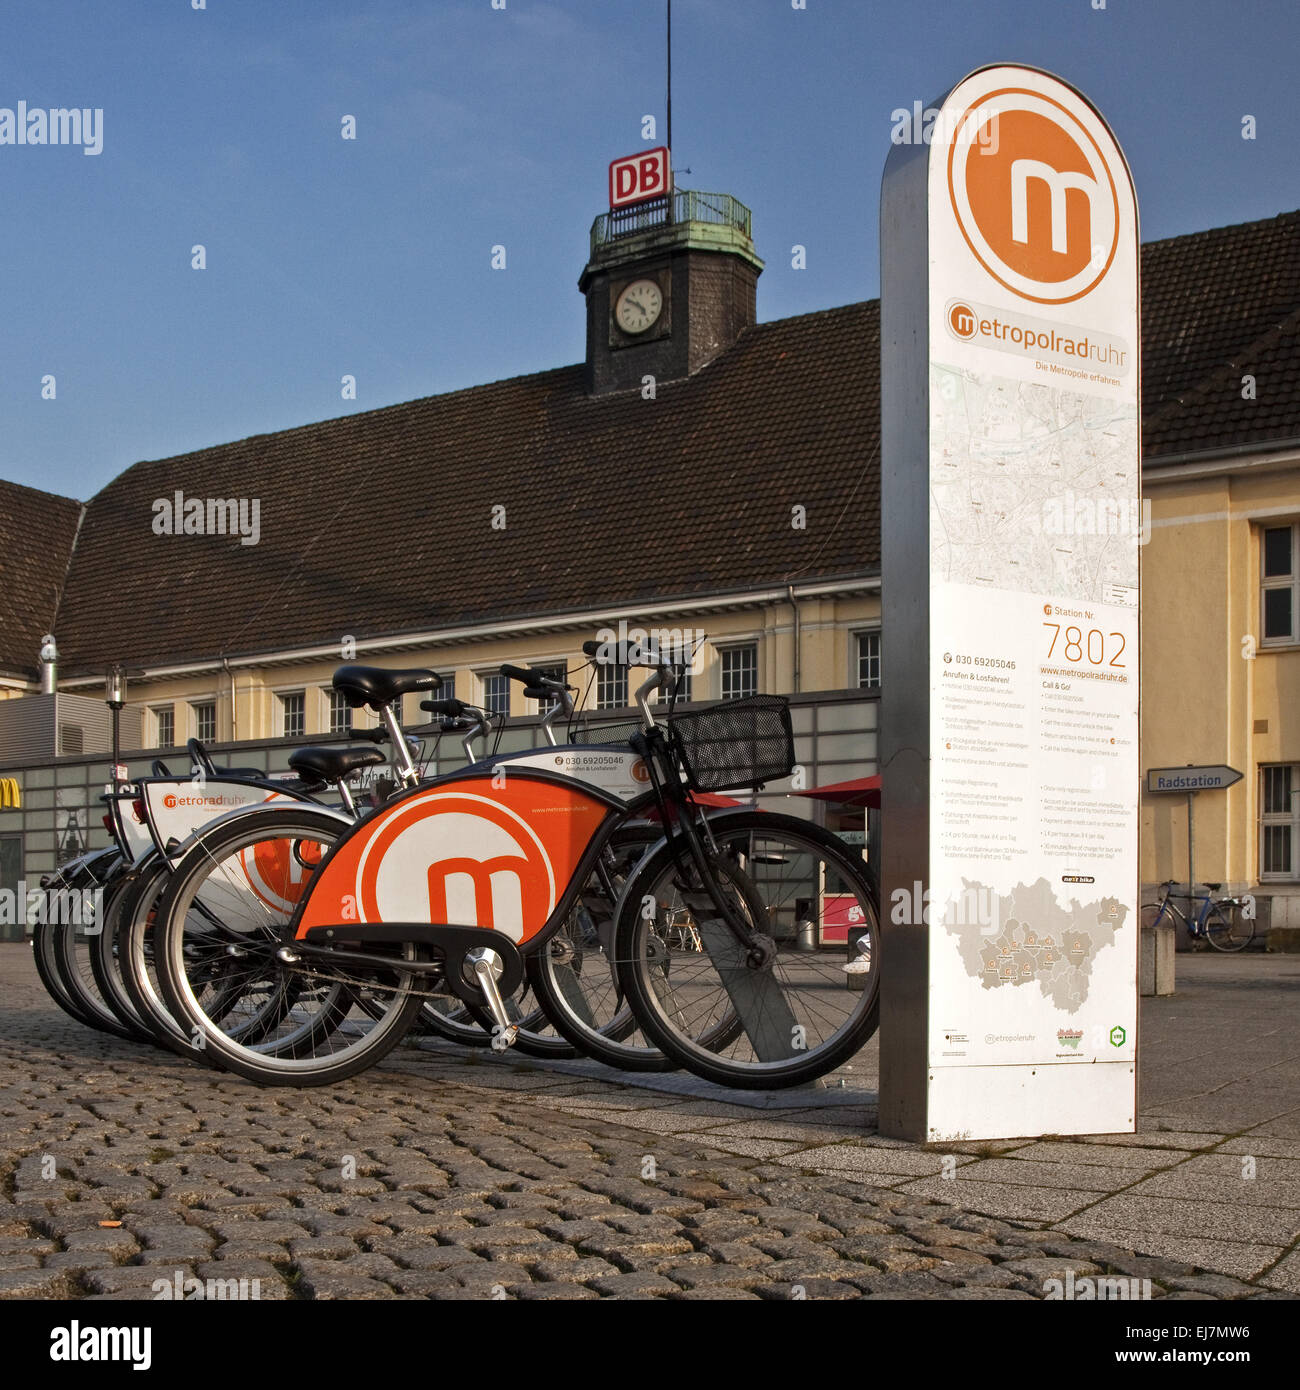 Bicycle metropolitan Ruhr, Herne, Germany Stock Photo